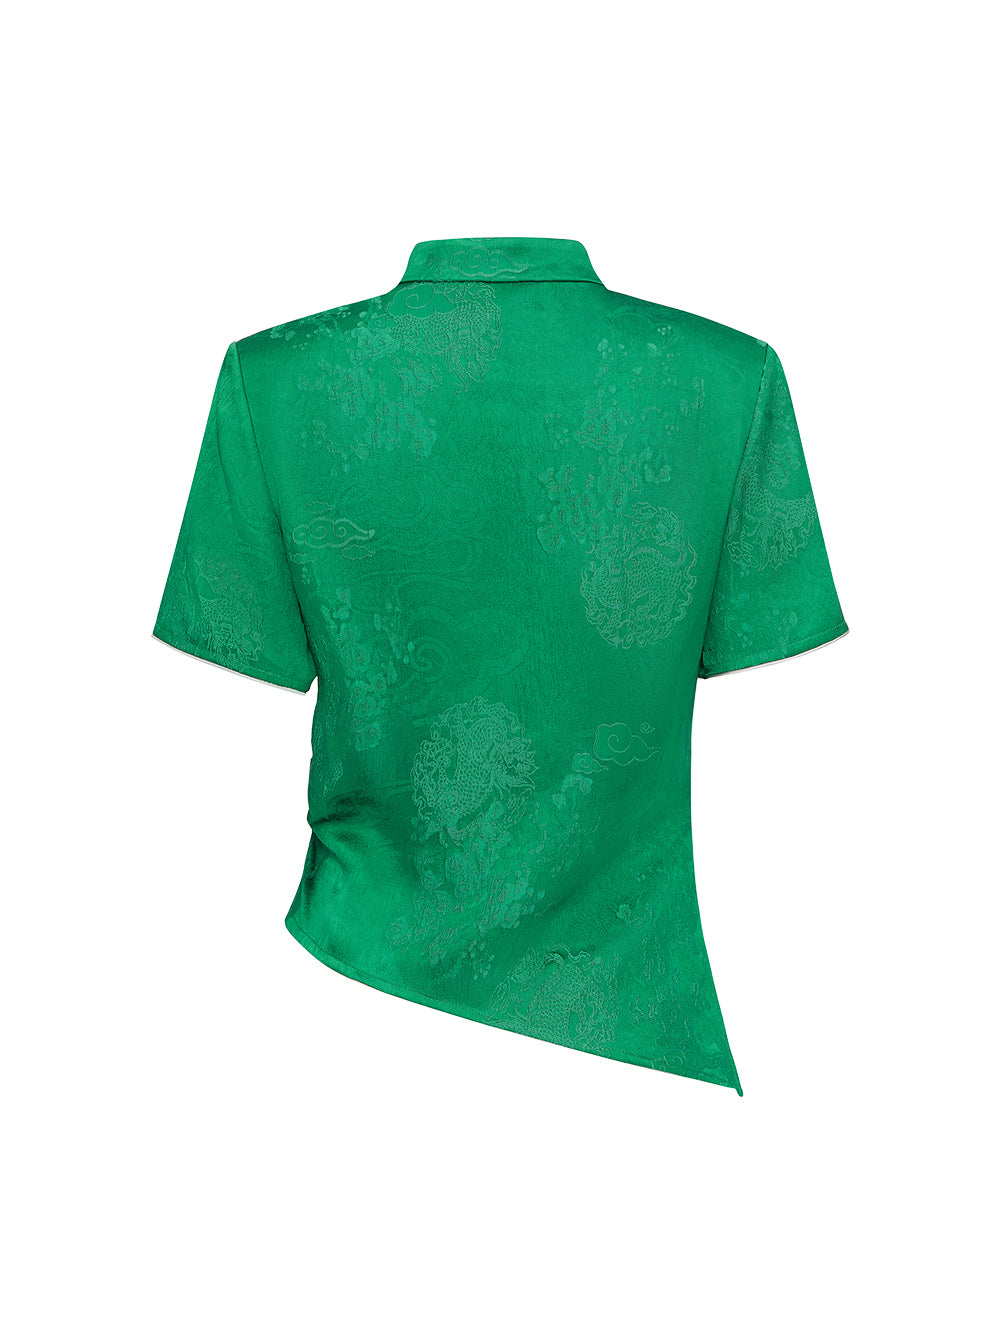 MUKZIN Green Chinese Button Design Short T-shirt